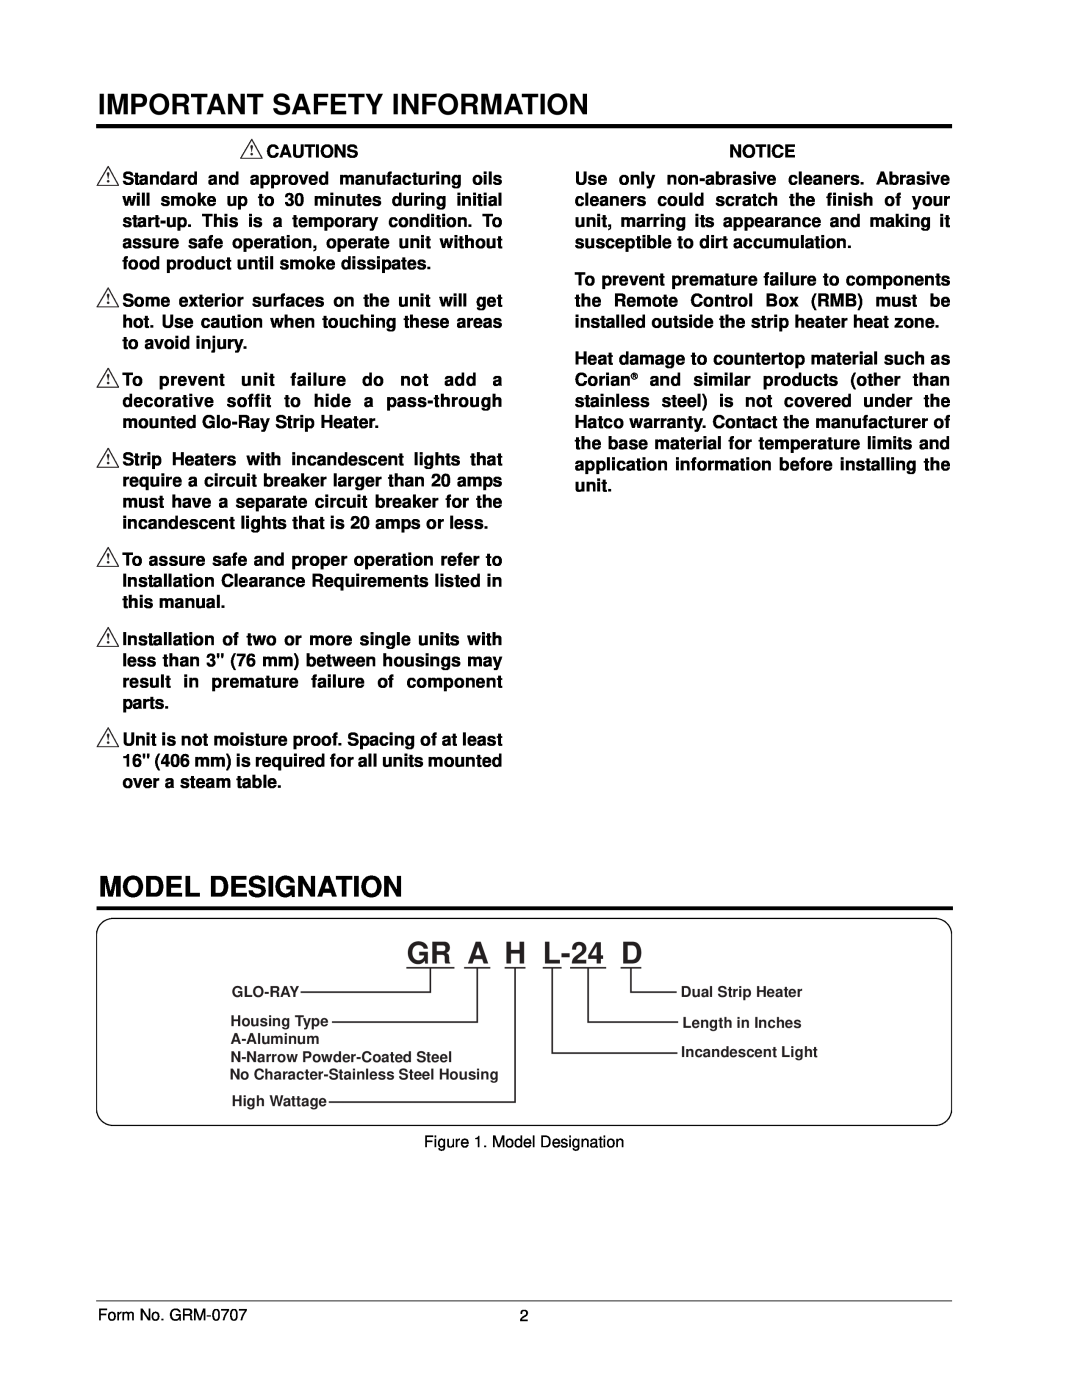 Hatco GRH, GRAL, GRAHL, GRNH manual Model Designation, GR A H L-24 D, Important Safety Information 